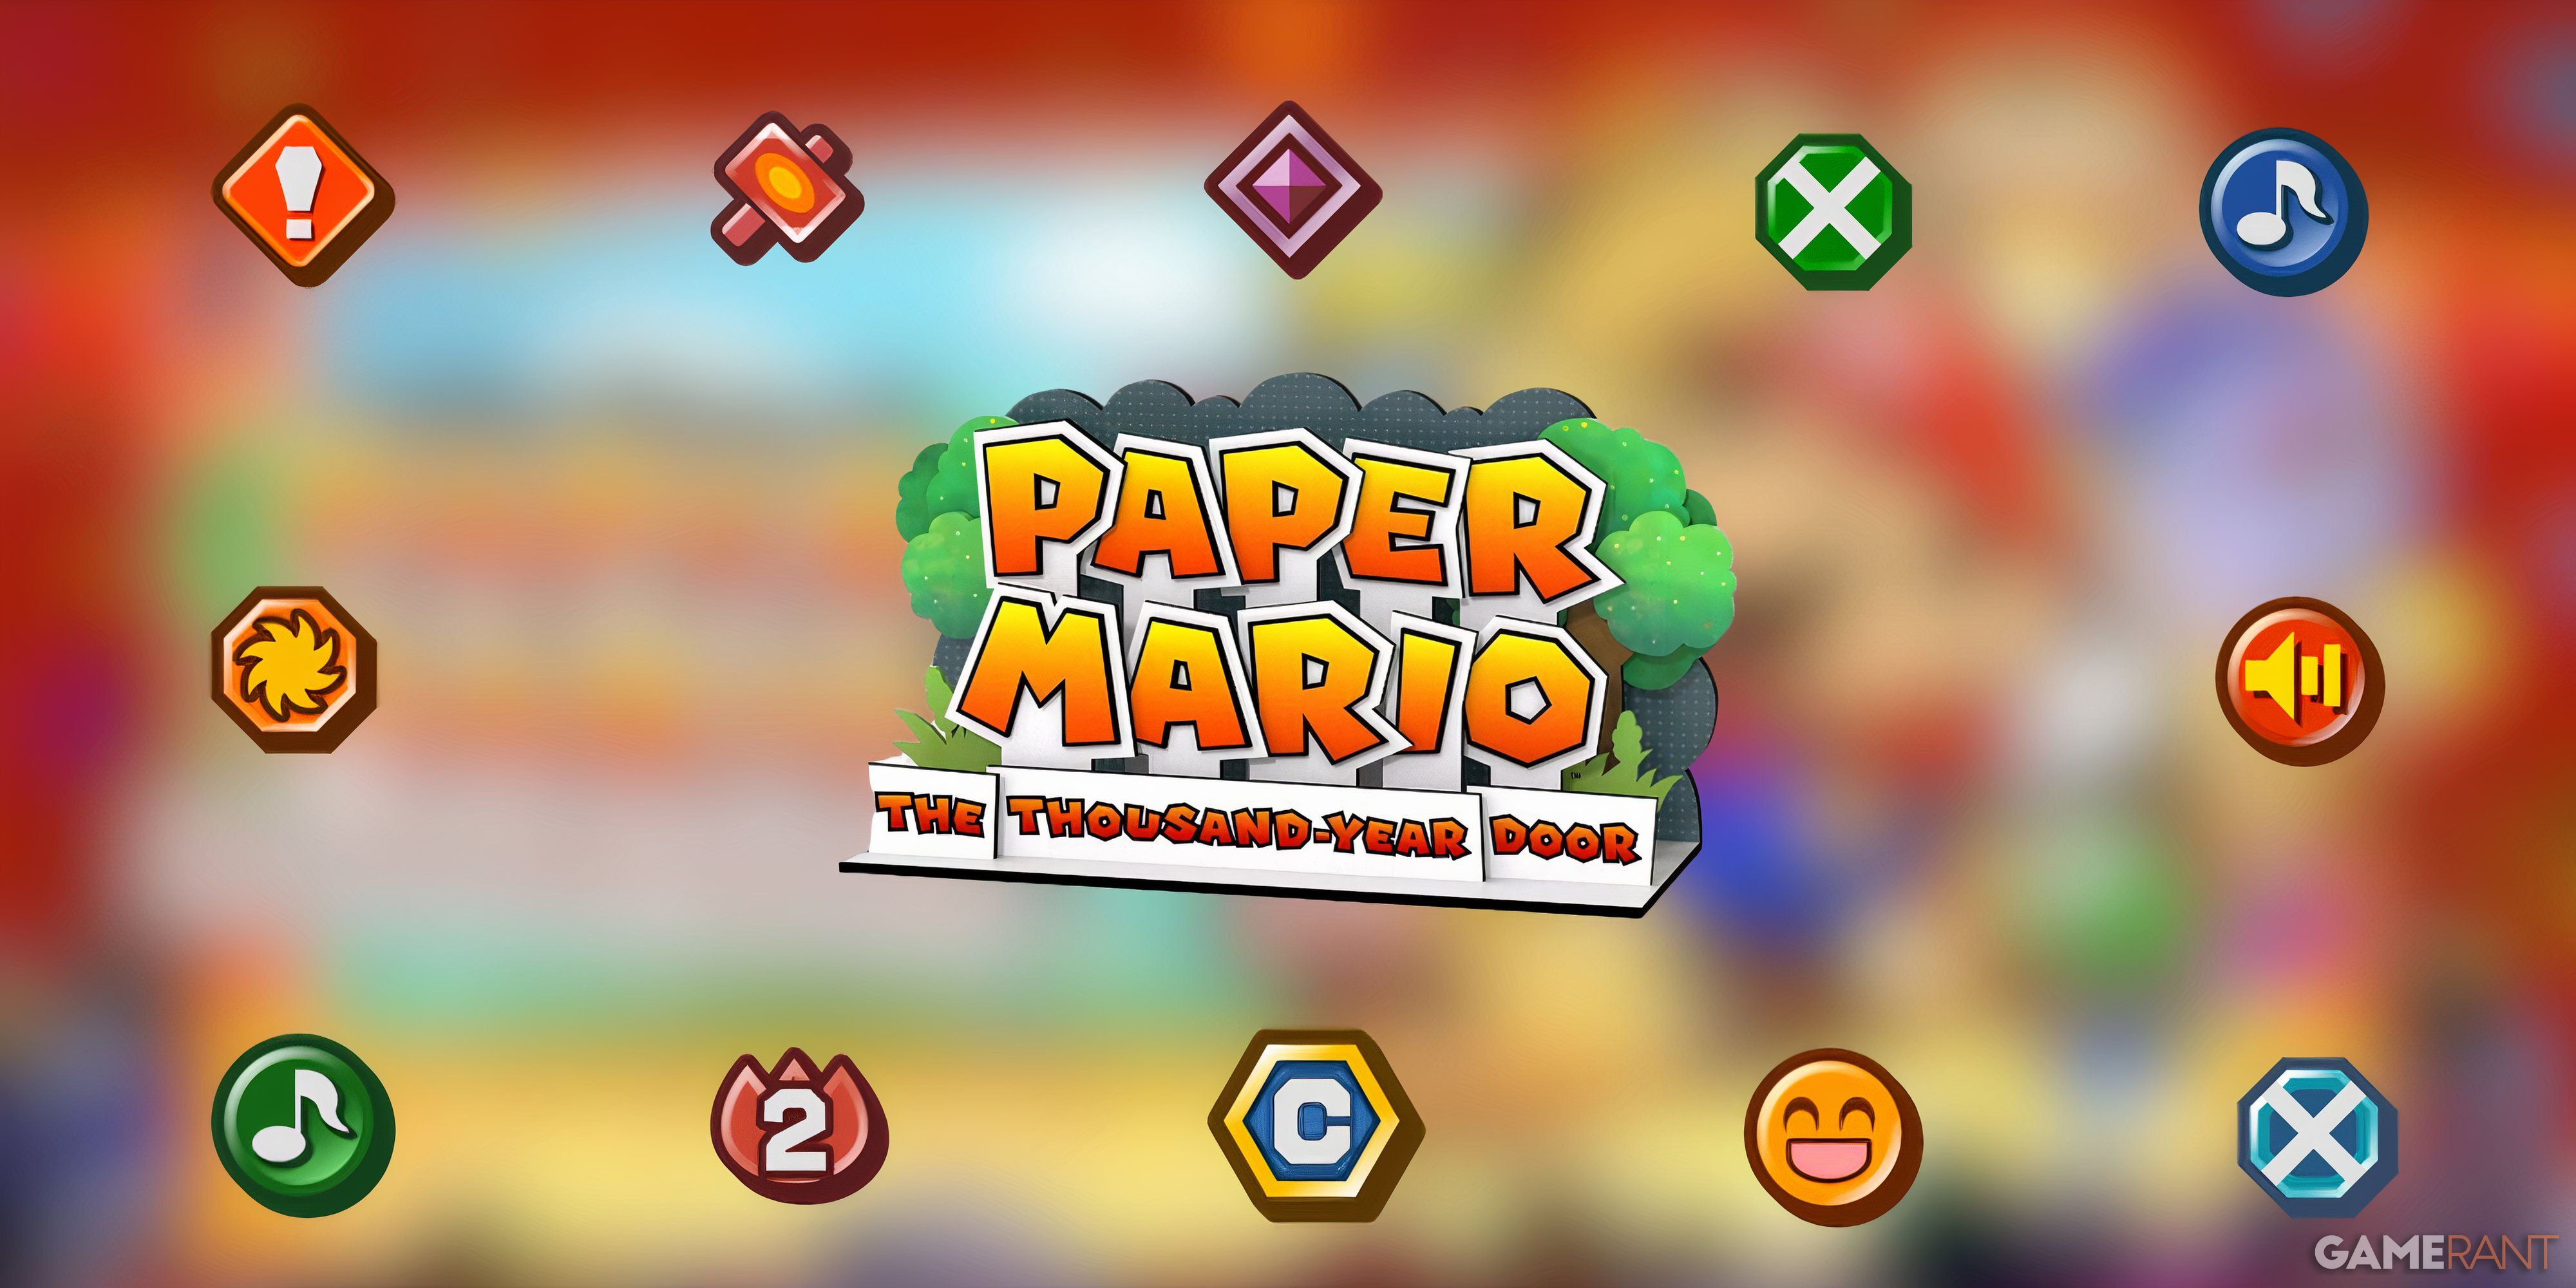 Paper Mario Thousand-Year Door - Badges